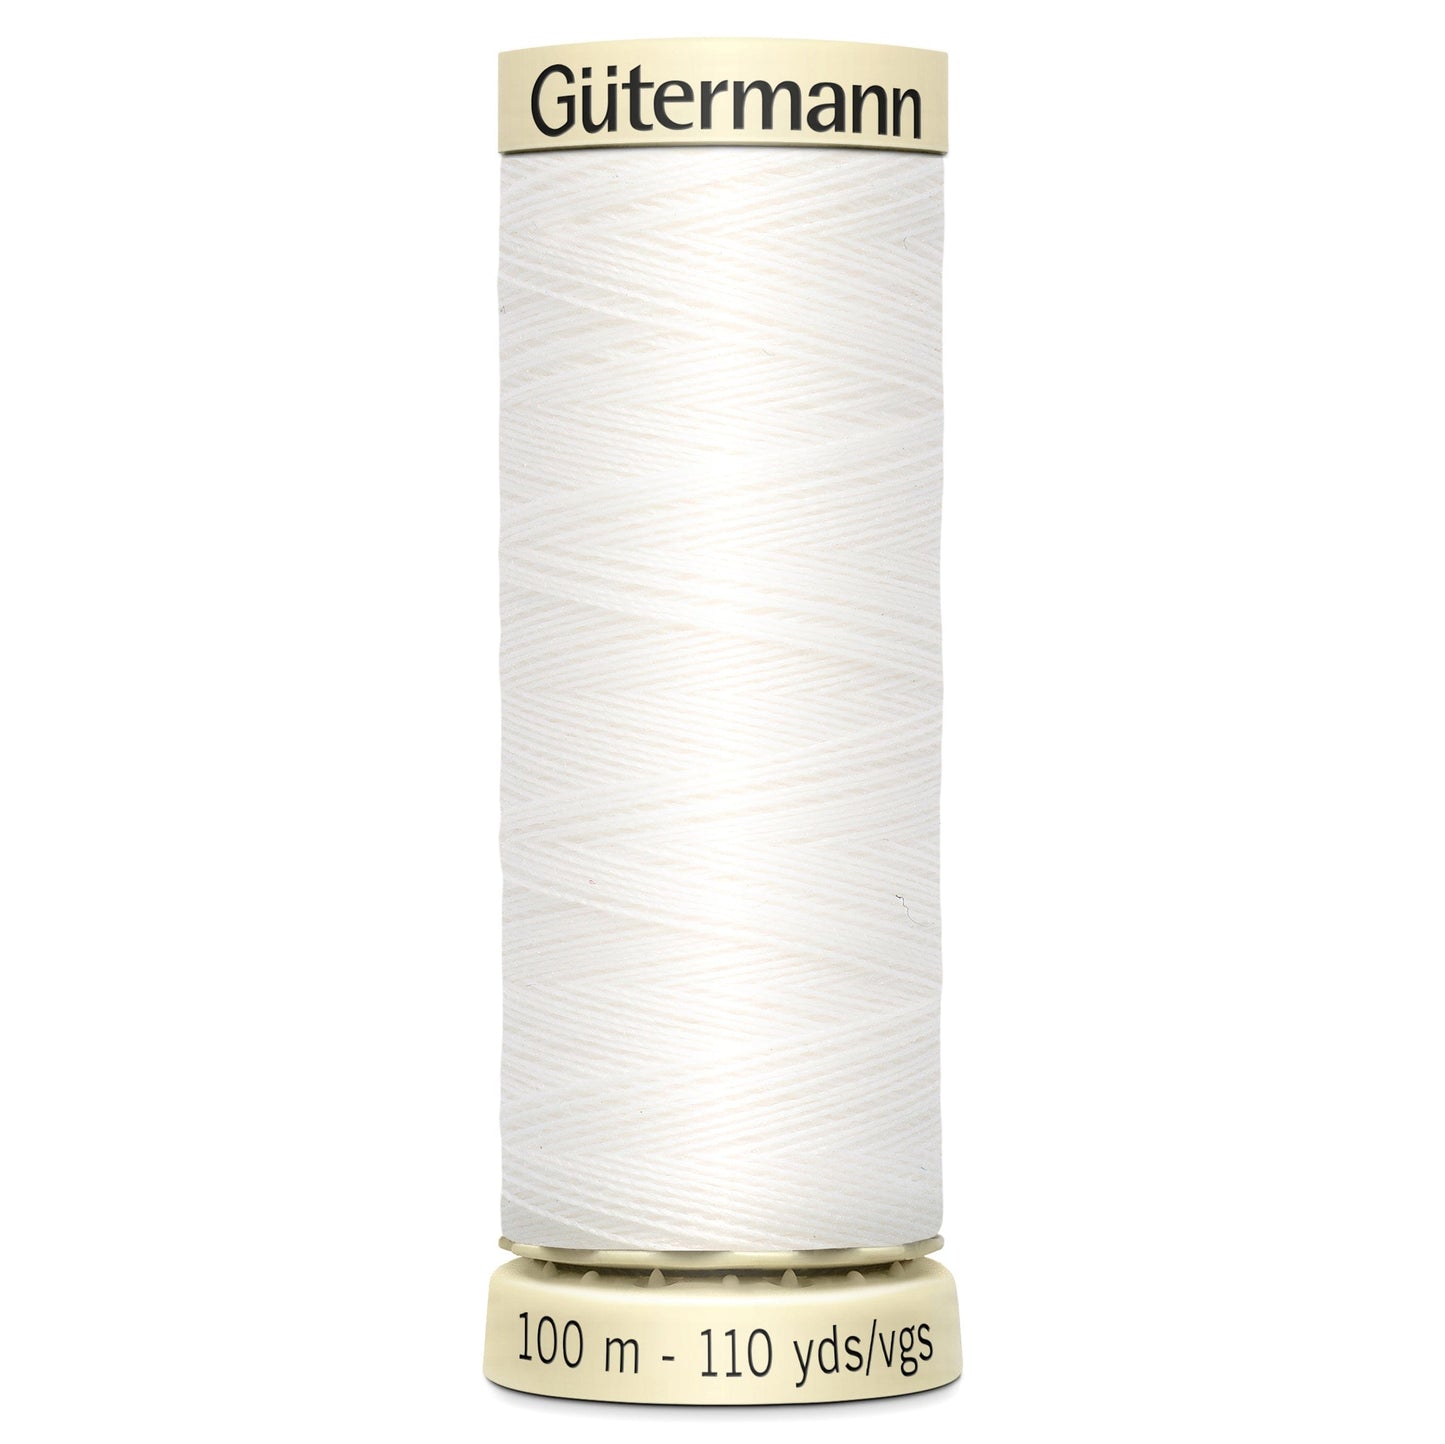 Gutermann Sew All Thread 100M Colour 800 (White)